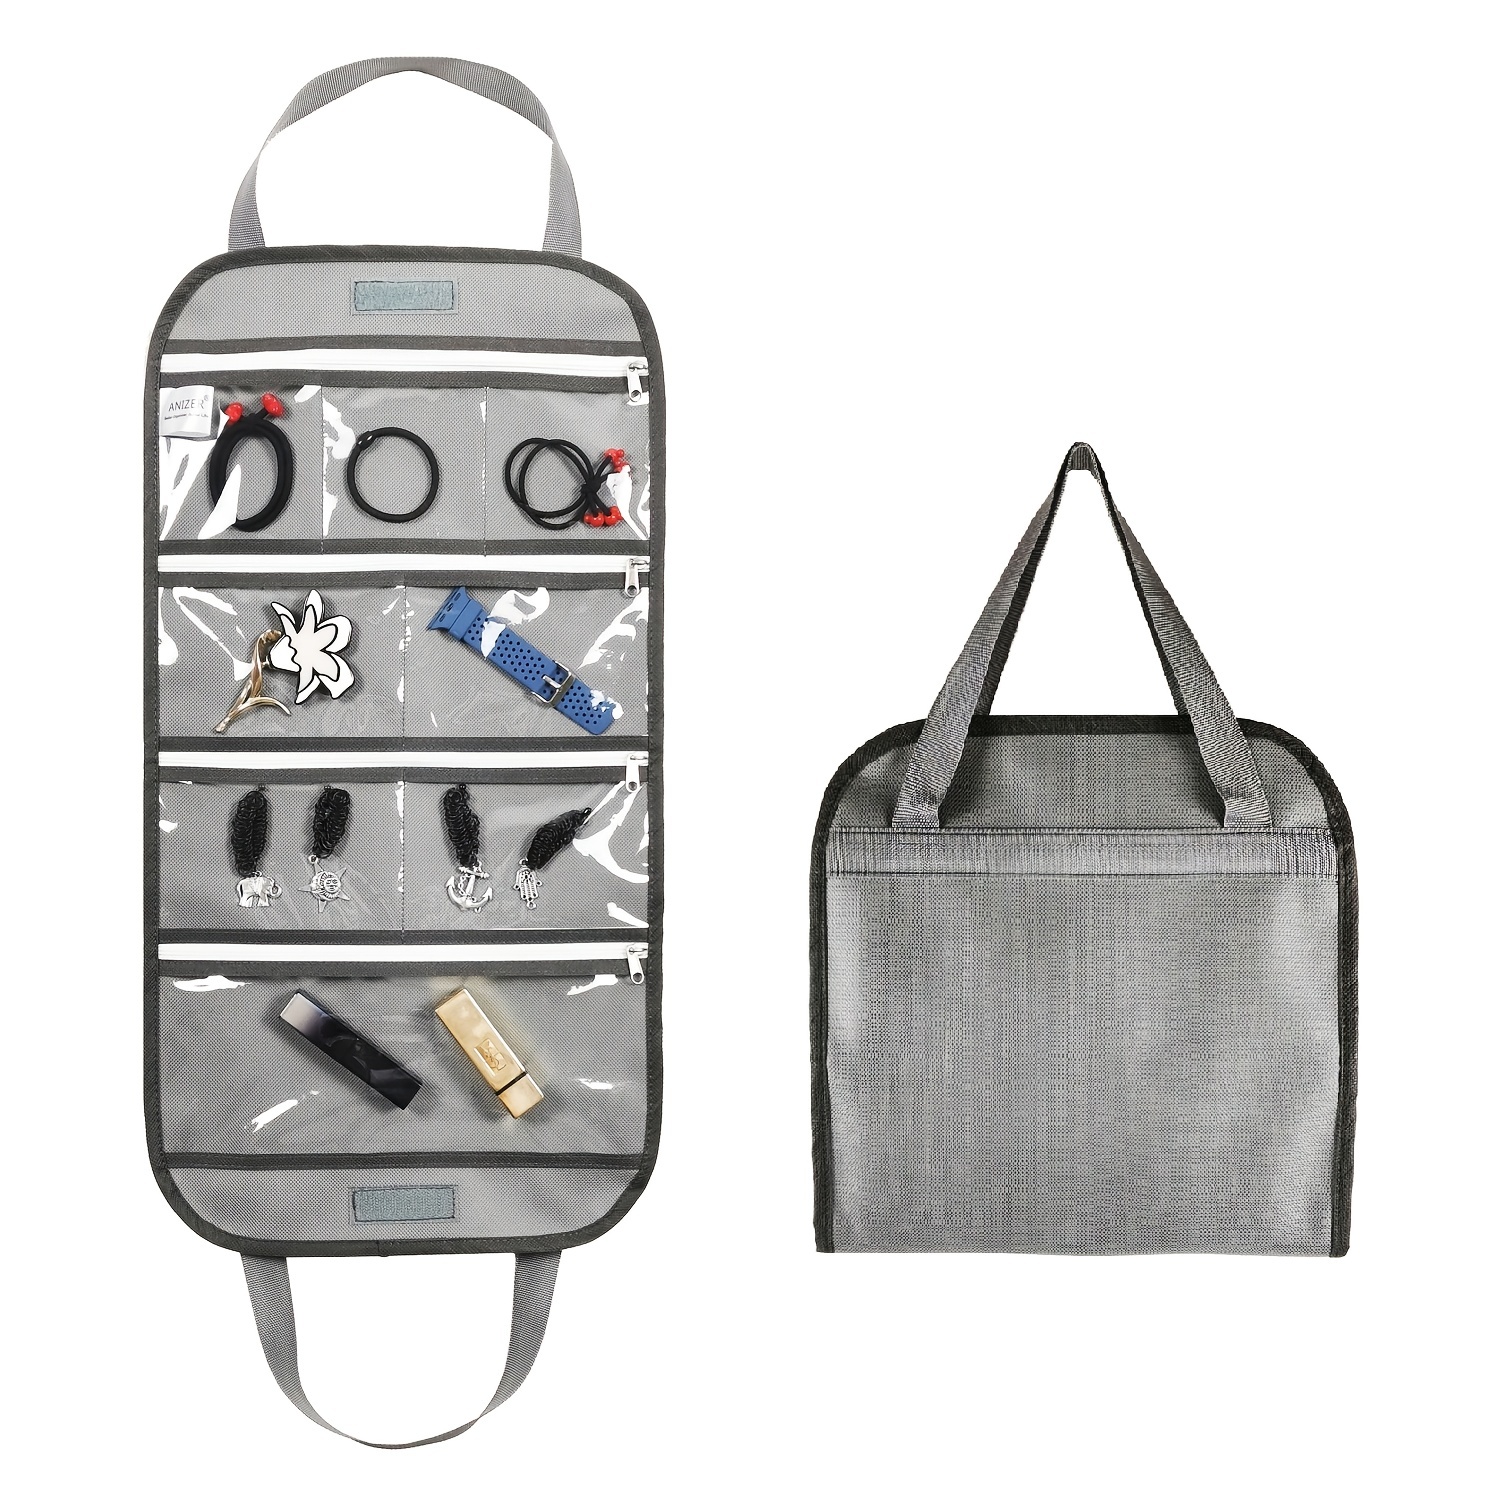 Jewellery Organizer Bag with 8 Pockets